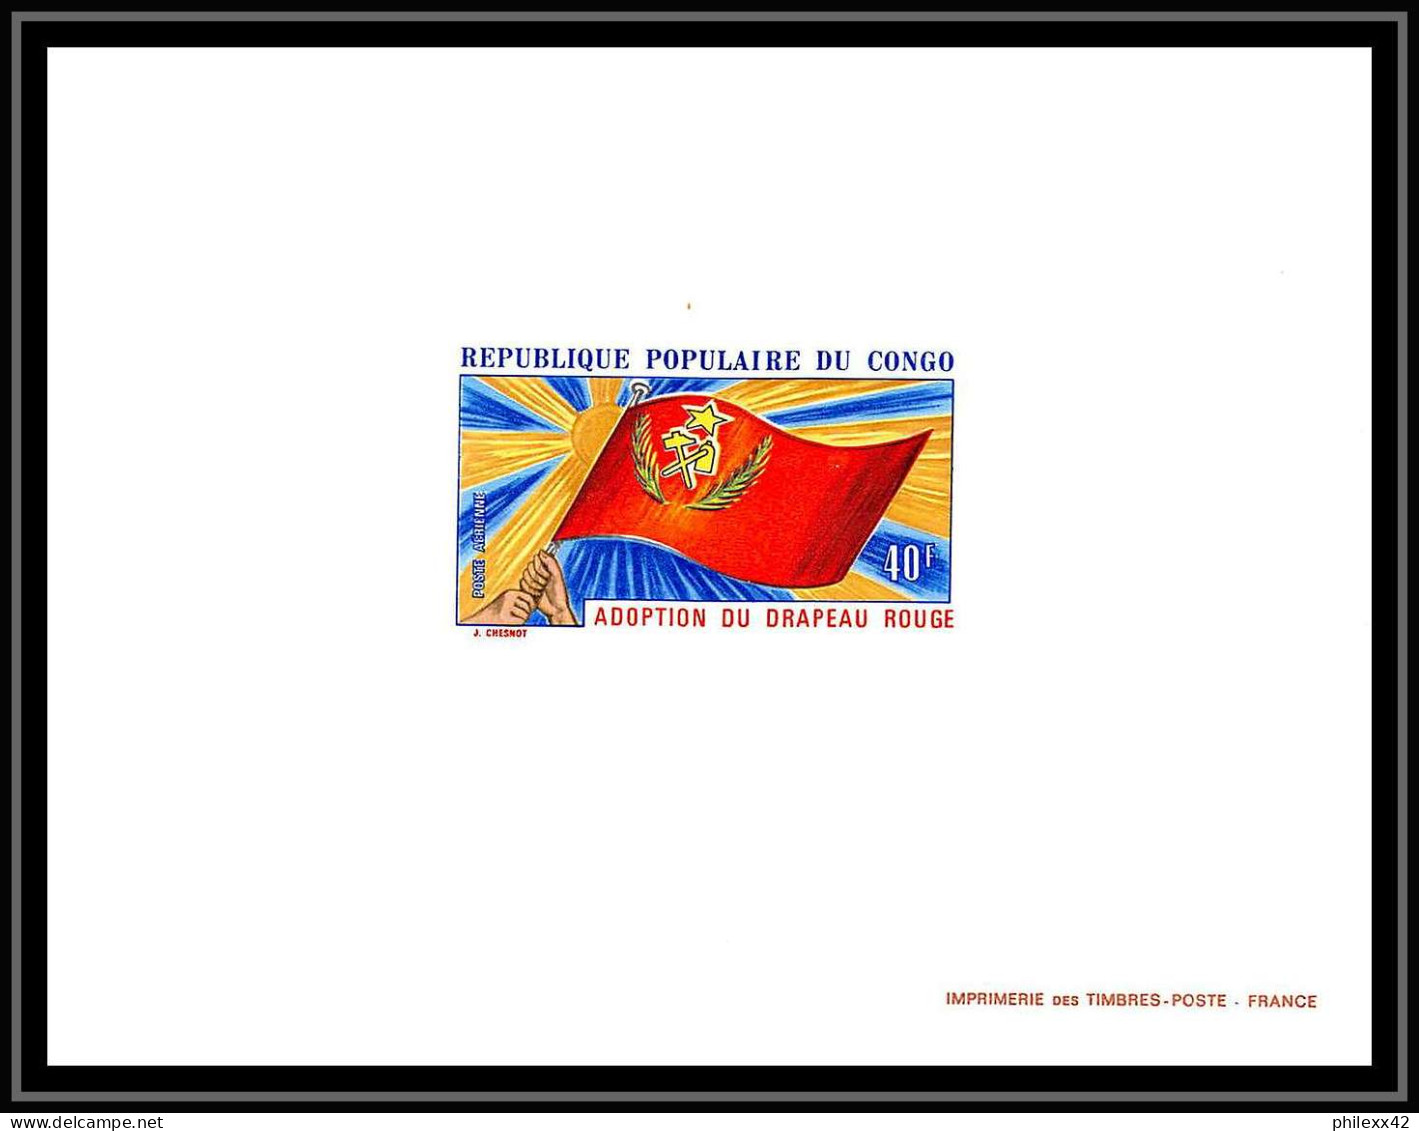 0576a Epreuve De Luxe Deluxe Proof Congo Poste Aerienne PA N°141 Drapeau Rouge FLAG Communisme - Ungebraucht